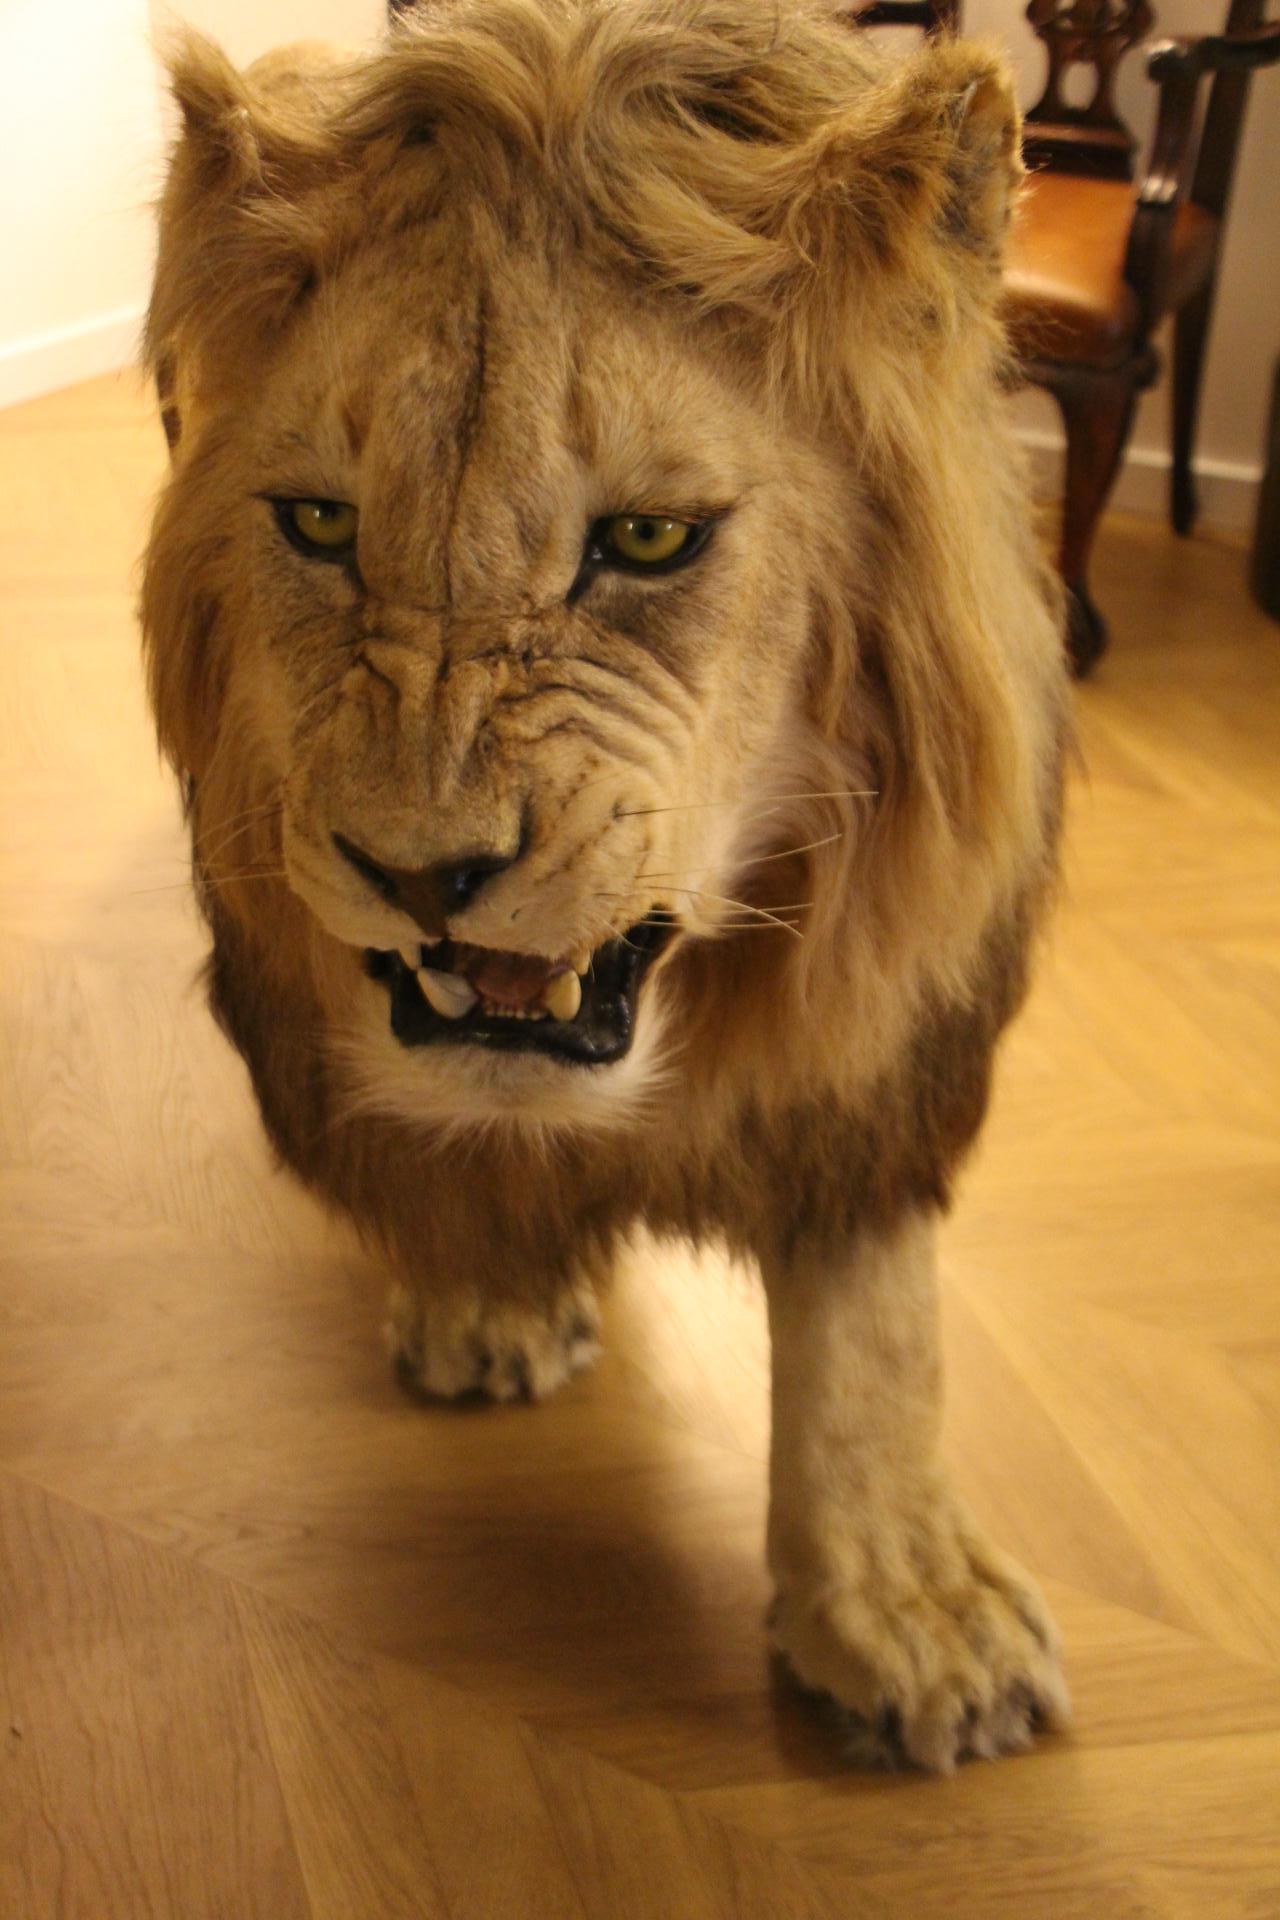 Il s'agit d'une superbe taxidermie d'un lion africain du début du 21e siècle, accompagnée de tous les documents nécessaires. Le lion prend une belle pose de chasse et mesure 105 cm de haut et 246 cm de long. Il est étonnamment réel. Qualité